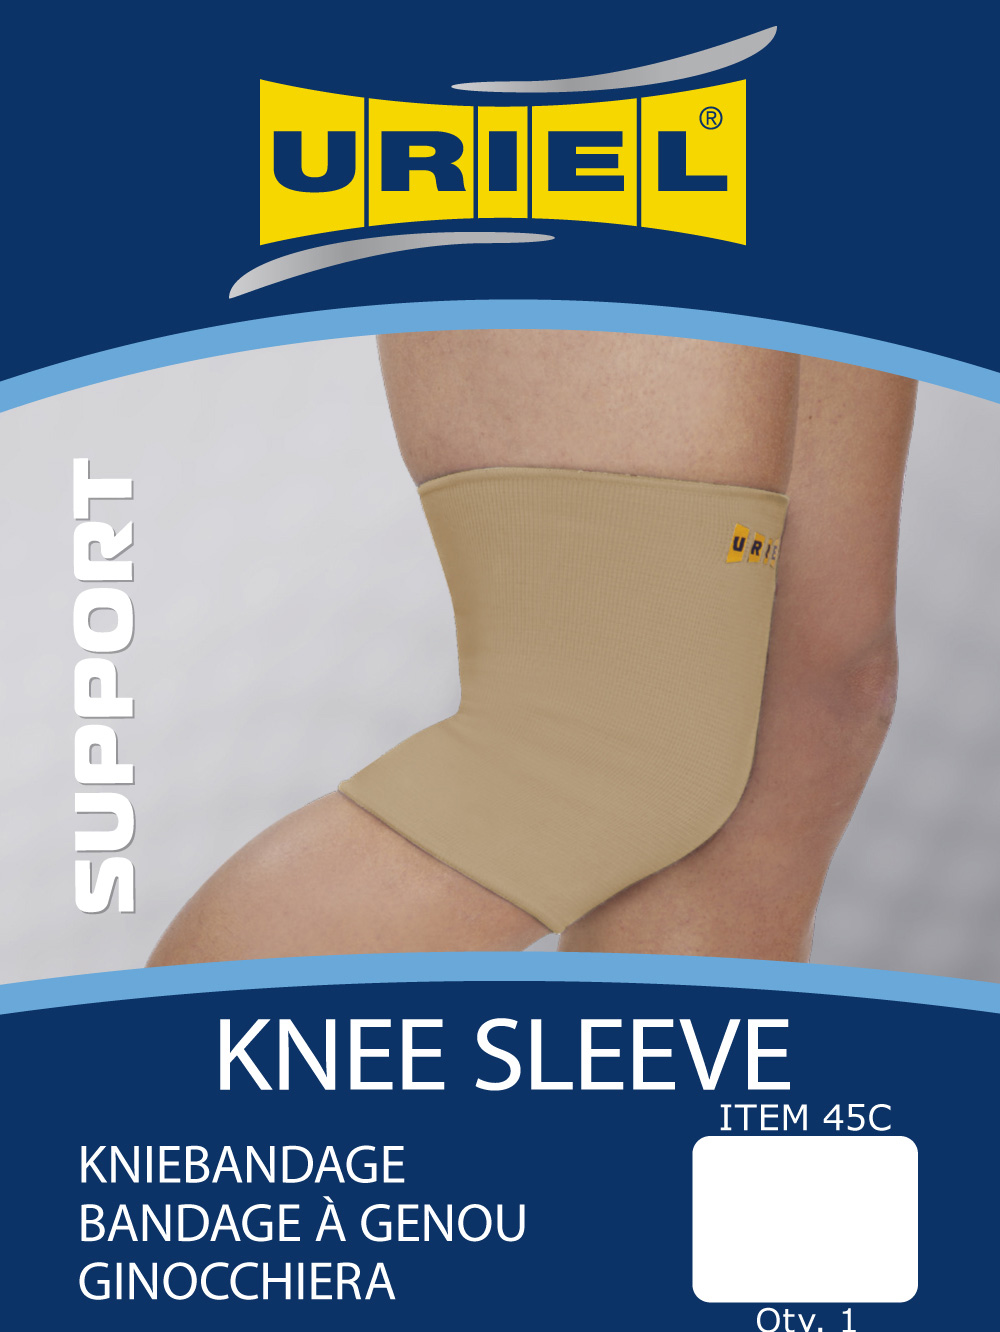 Knee bandage